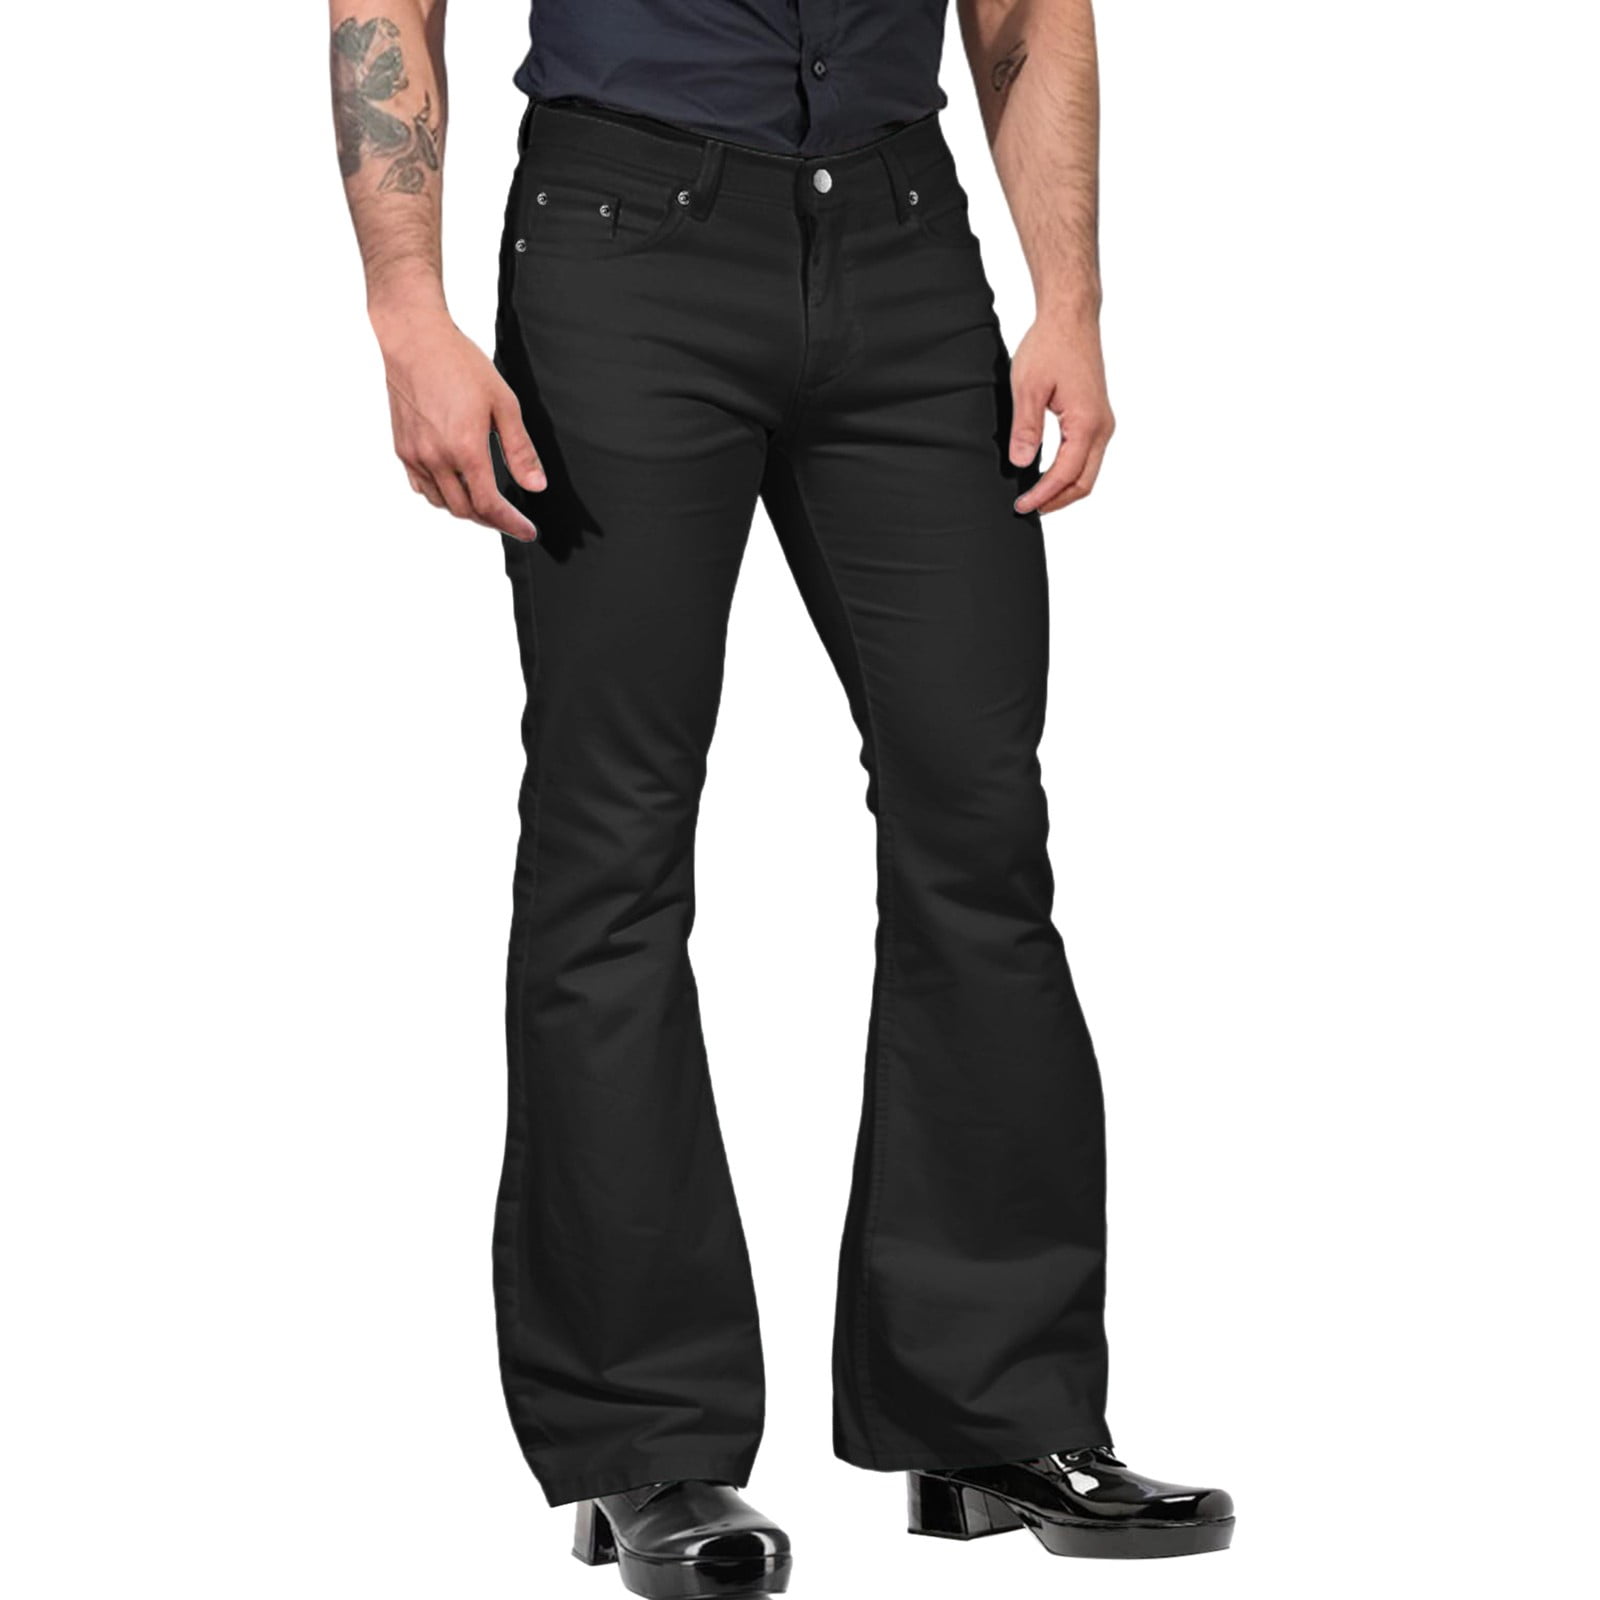 Elastic Jeans Man Size 44 | Men's Jeans 46 | Pencil Pants | Jeans Ankle |  Trousers - Length - Aliexpress